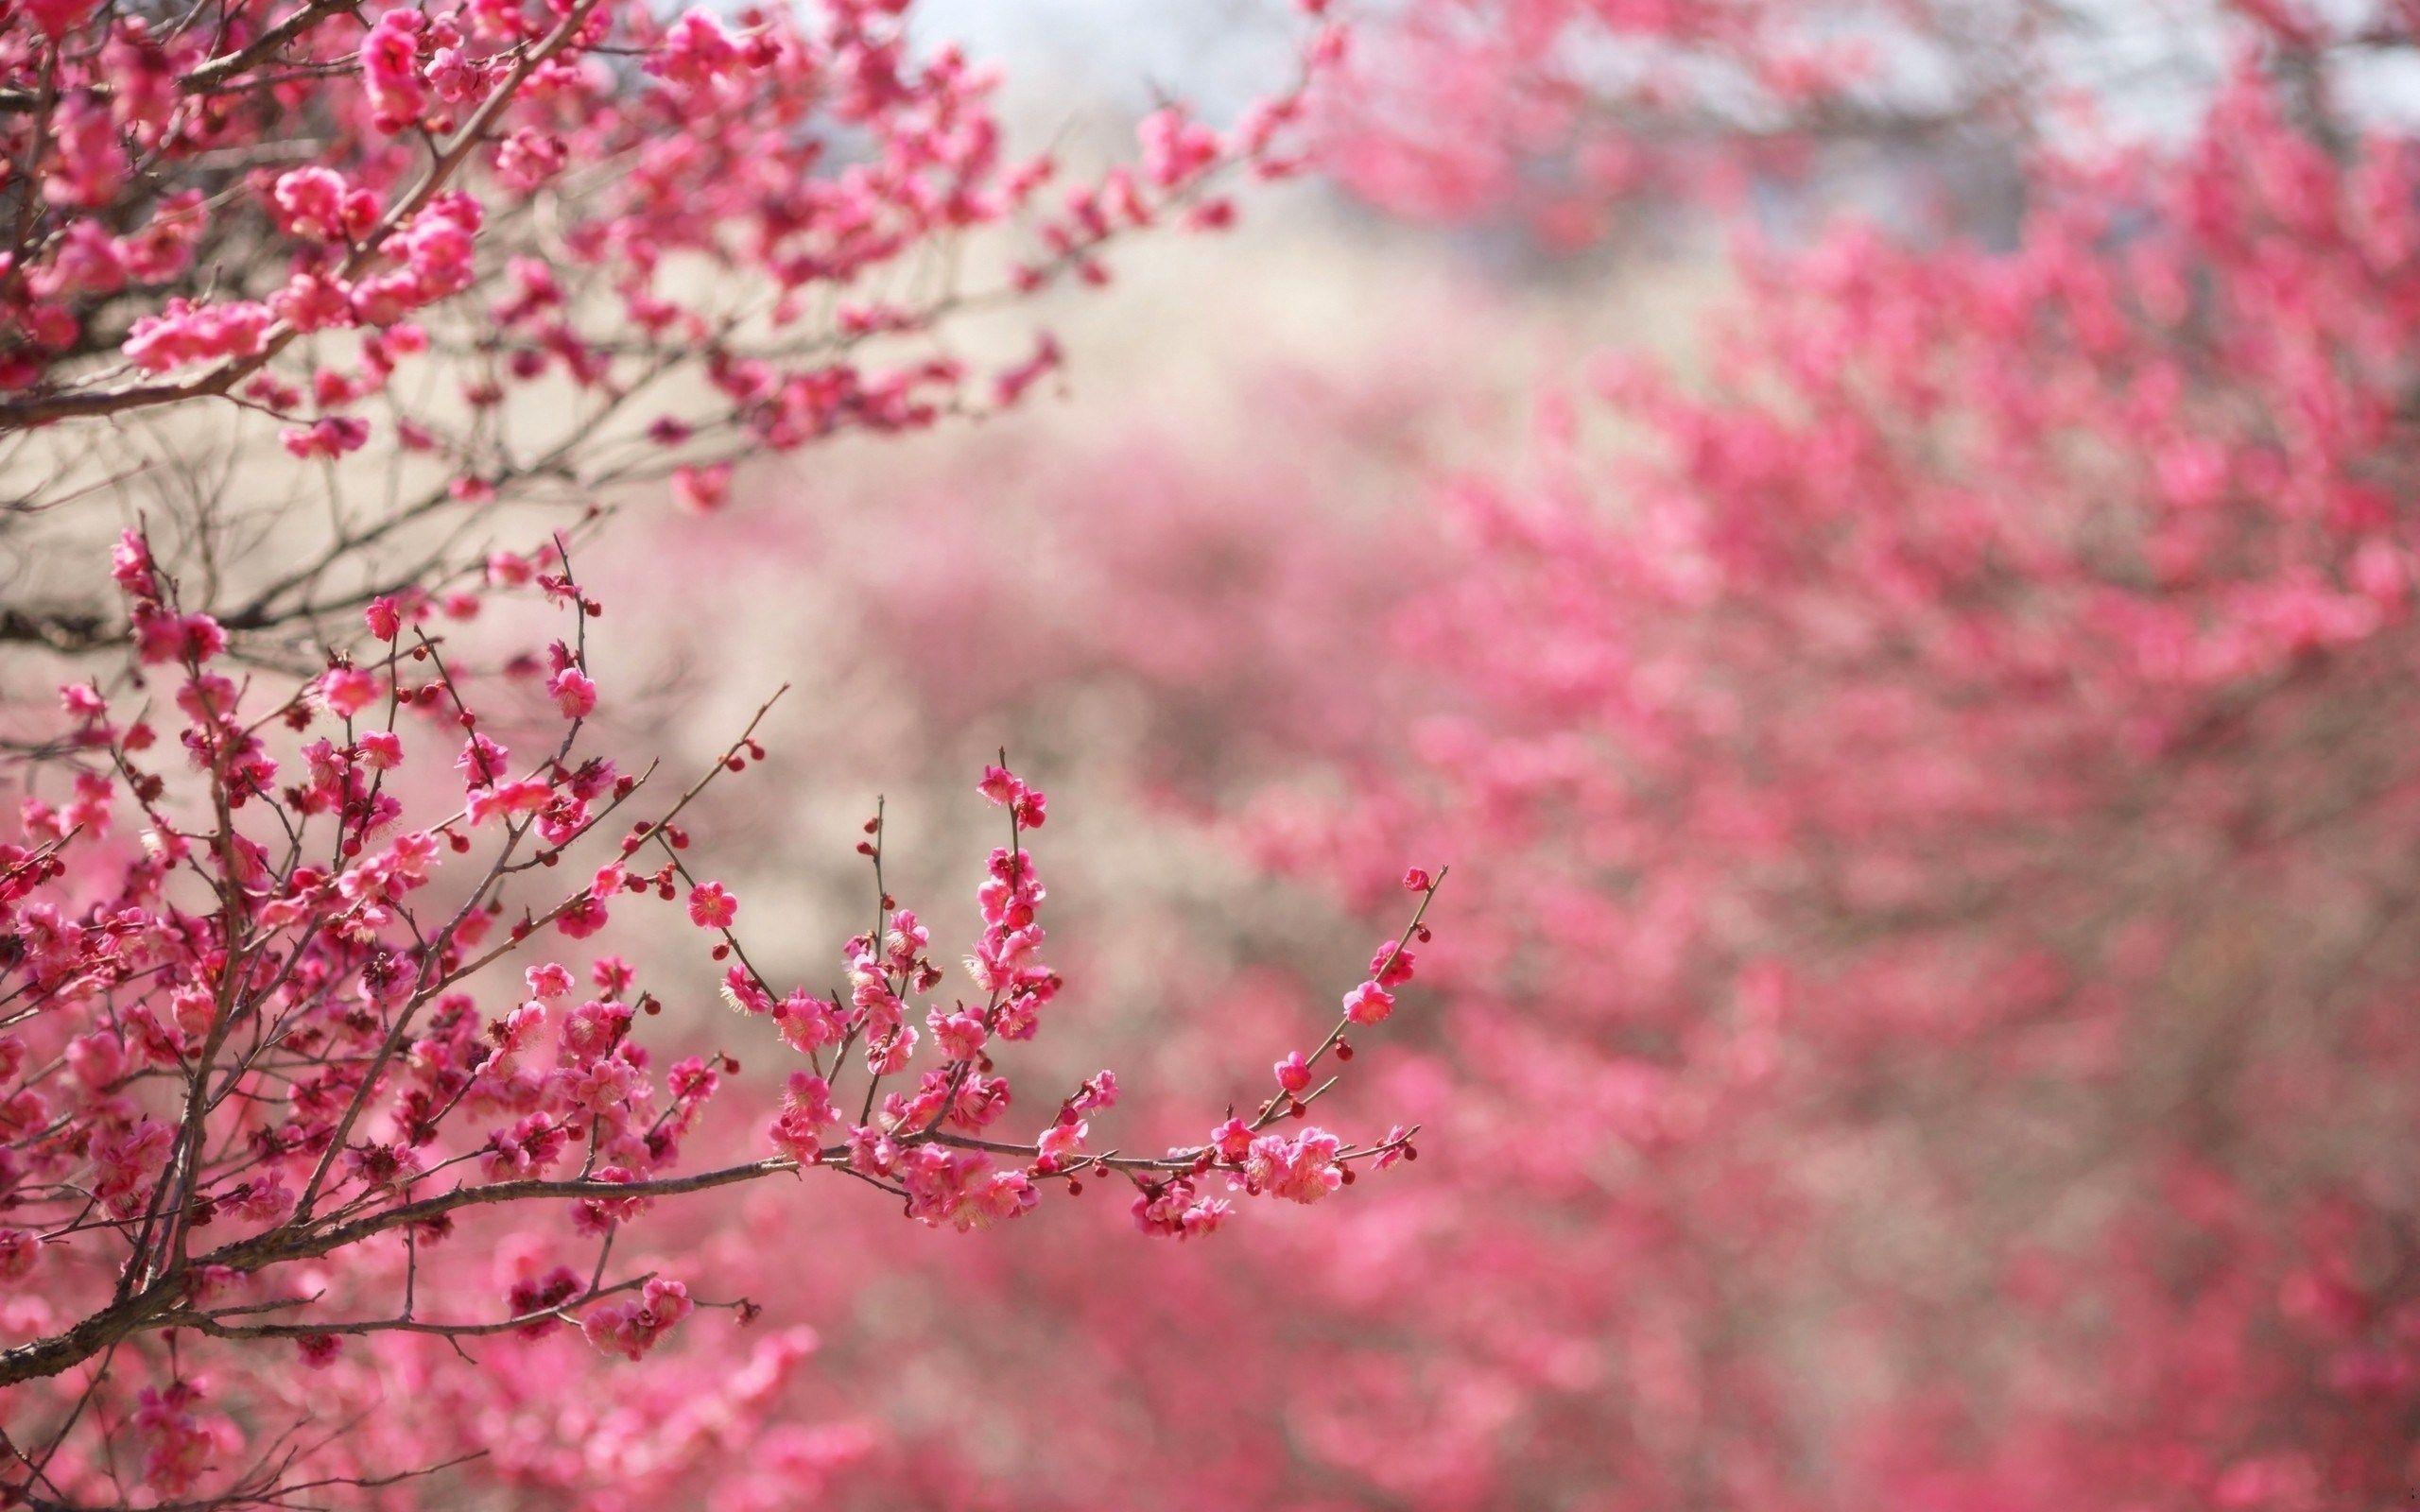 Hình nền thiên nhiên màu hồng là sự kết hợp hoàn hảo giữa vẻ đẹp tự nhiên và sự sáng tạo của con người. Những khung cảnh thiên nhiên tràn đầy màu hồng khiến cho người xem cảm thấy yêu đời hơn. Hãy để những hình nền thiên nhiên màu hồng này đưa bạn vào một thế giới tươi đẹp và ngọt ngào.